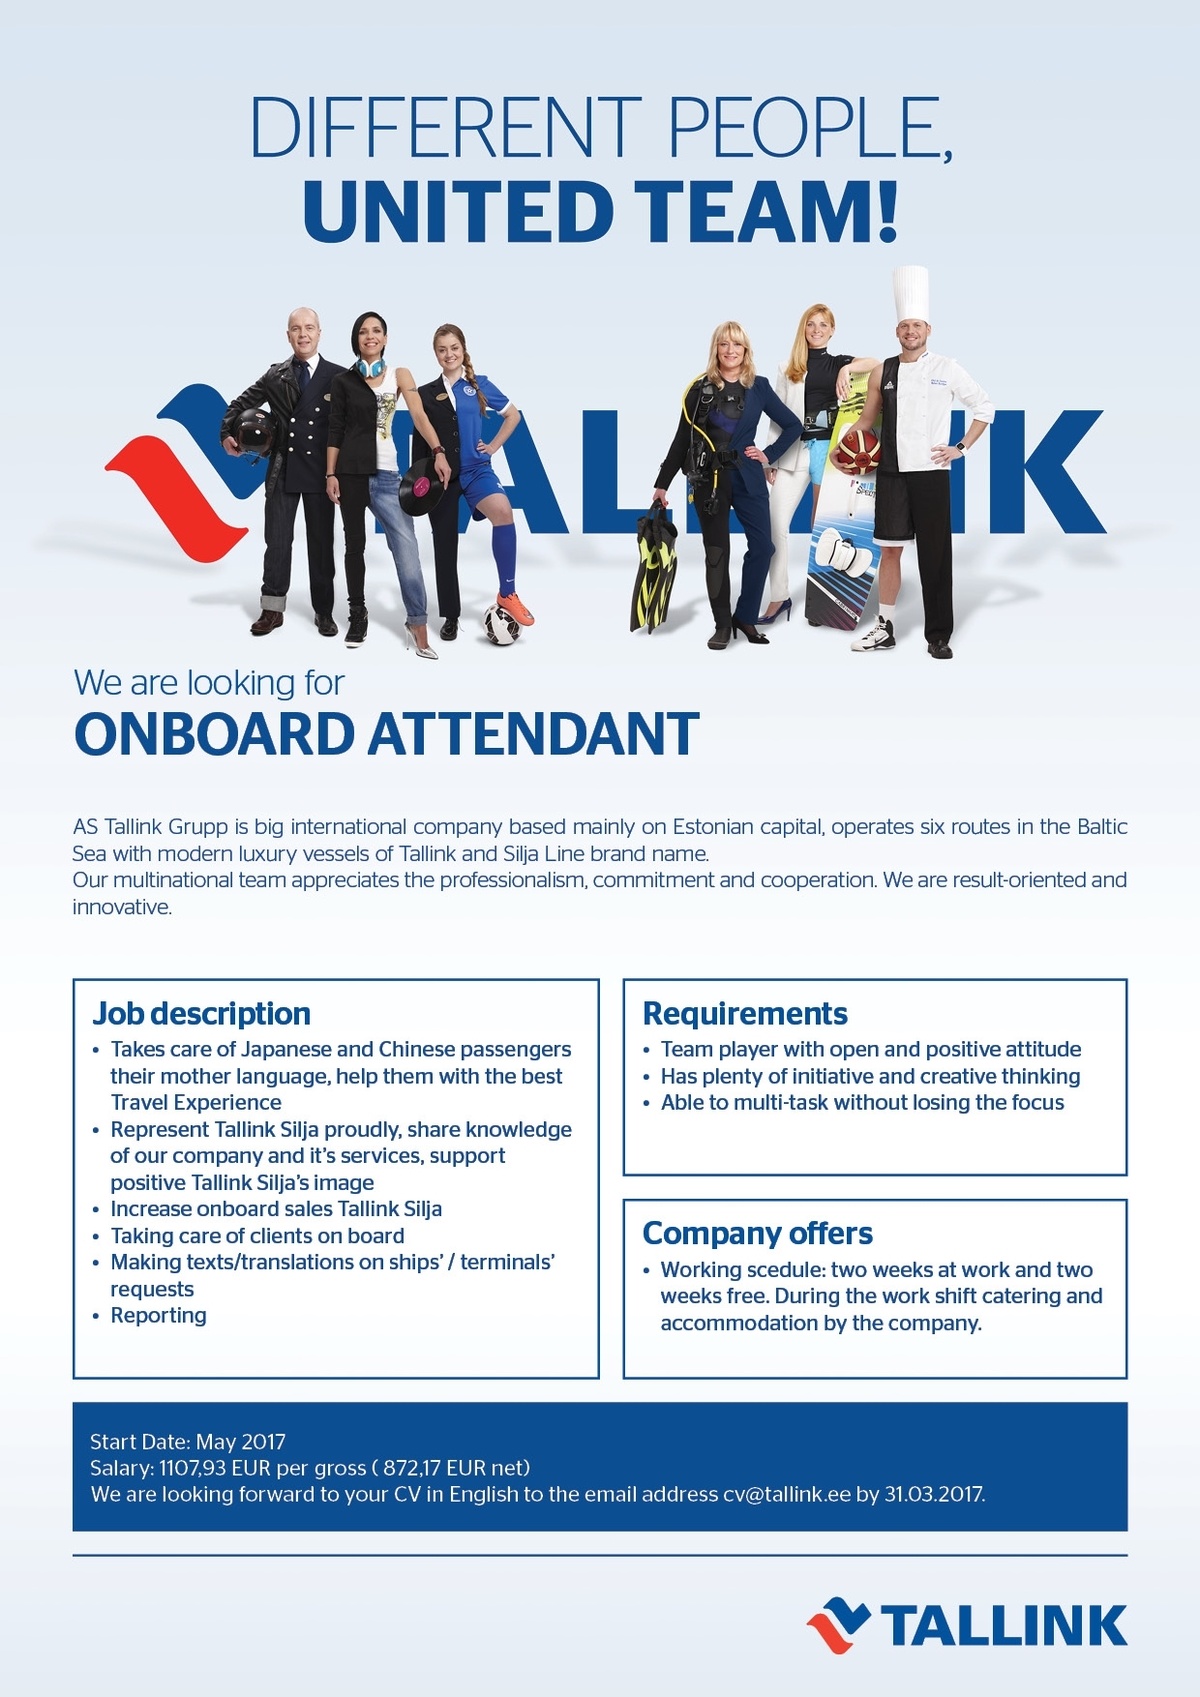 Tallink Grupp AS Onboard Attendant